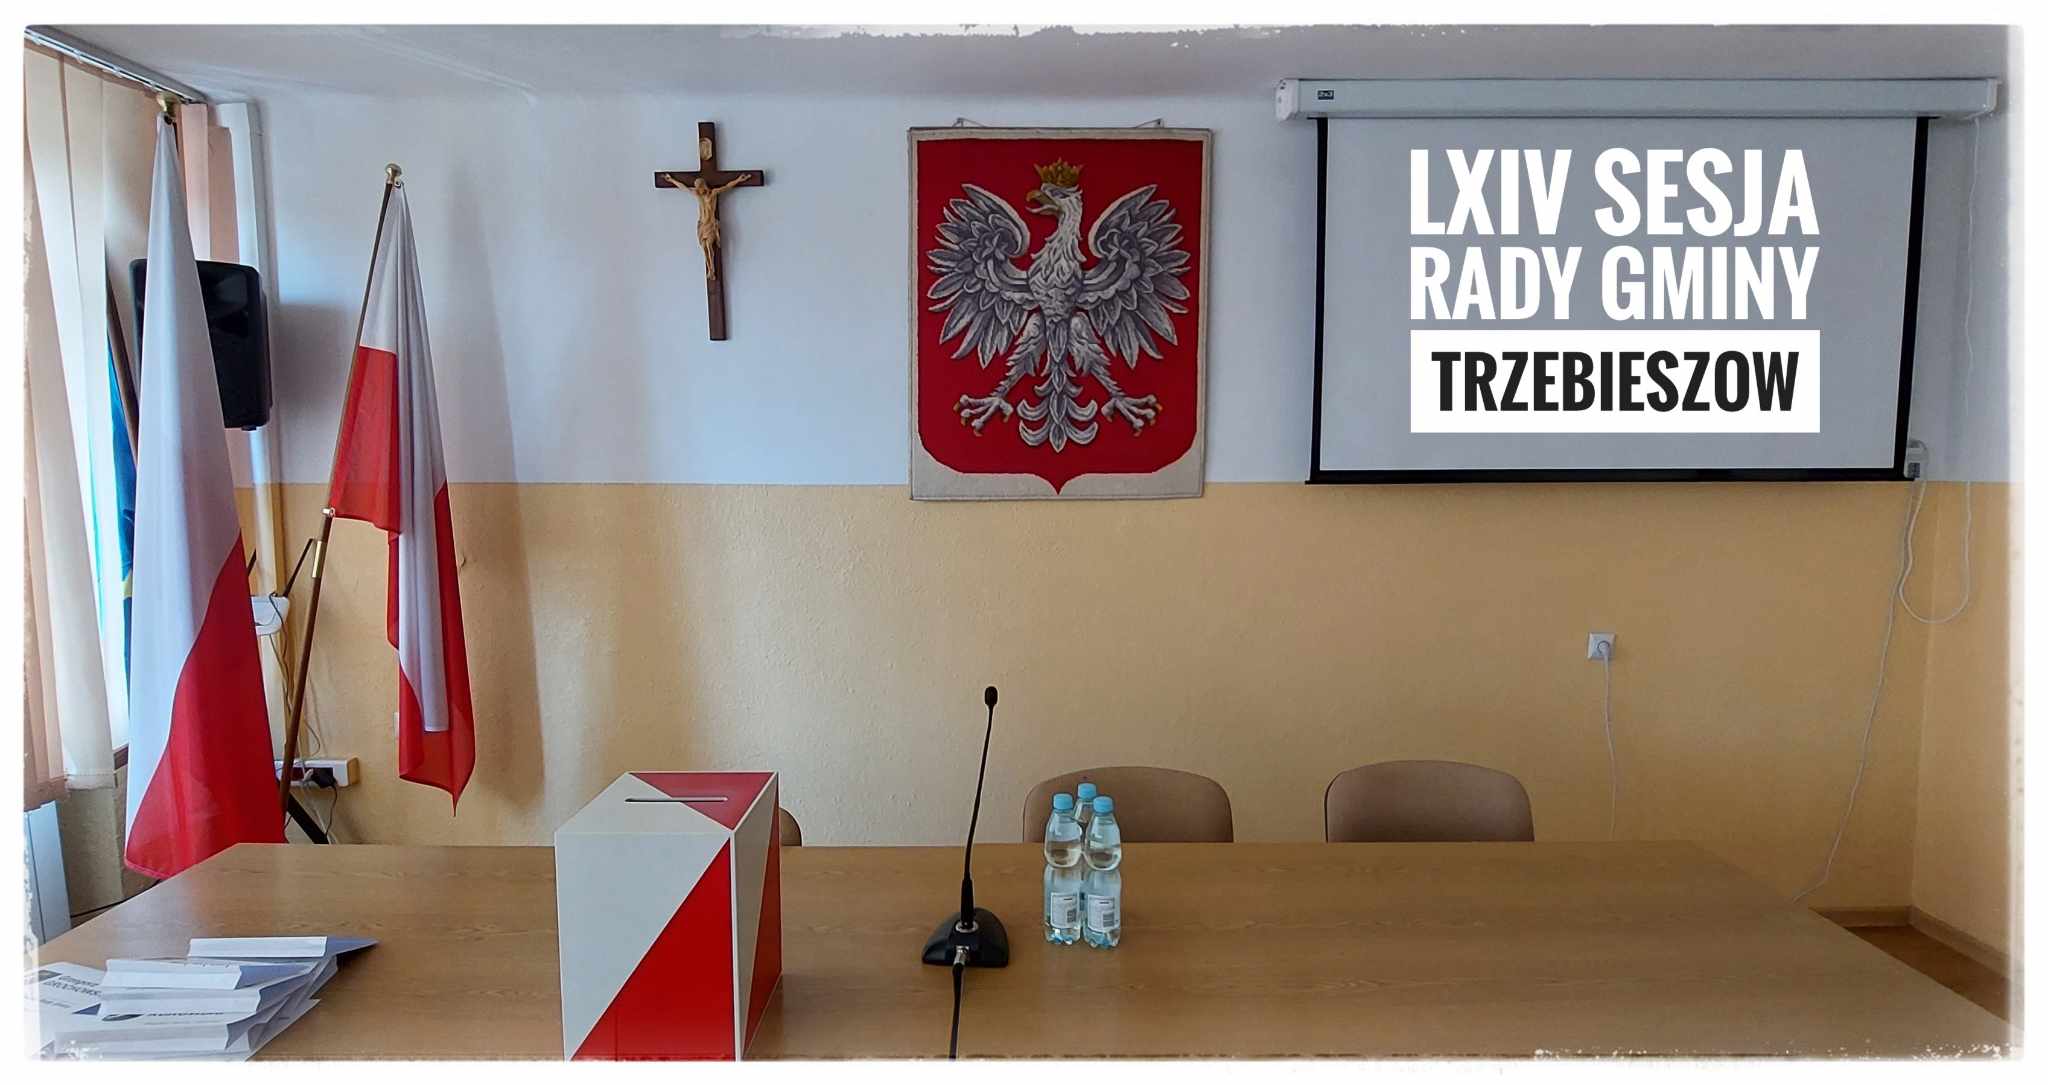 Komentarz Wójta i radnych do LXIV Sesji Rady Gminy Trzebieszów z dnia 11 lipca br., która się nie odbyła.